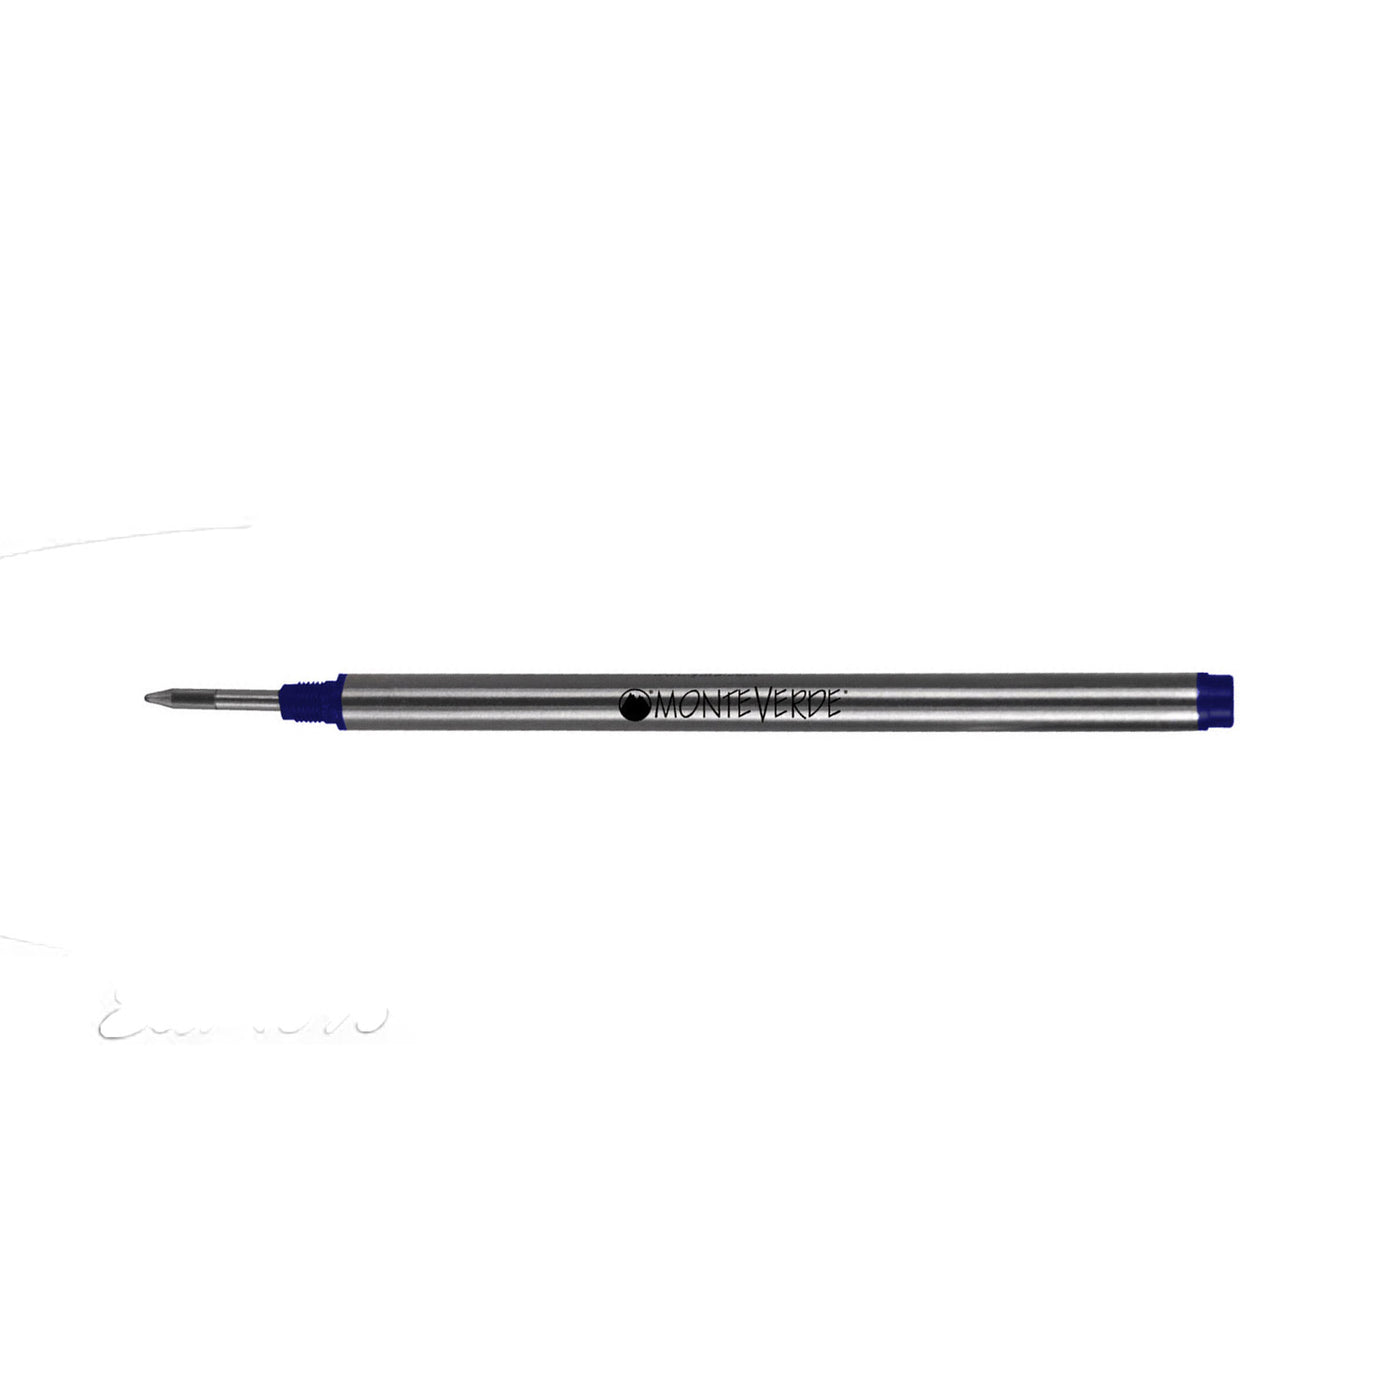 Monteverde Roller Ball Pen Refill for Montblanc - Fine - Blue Black - Pack of 2 3